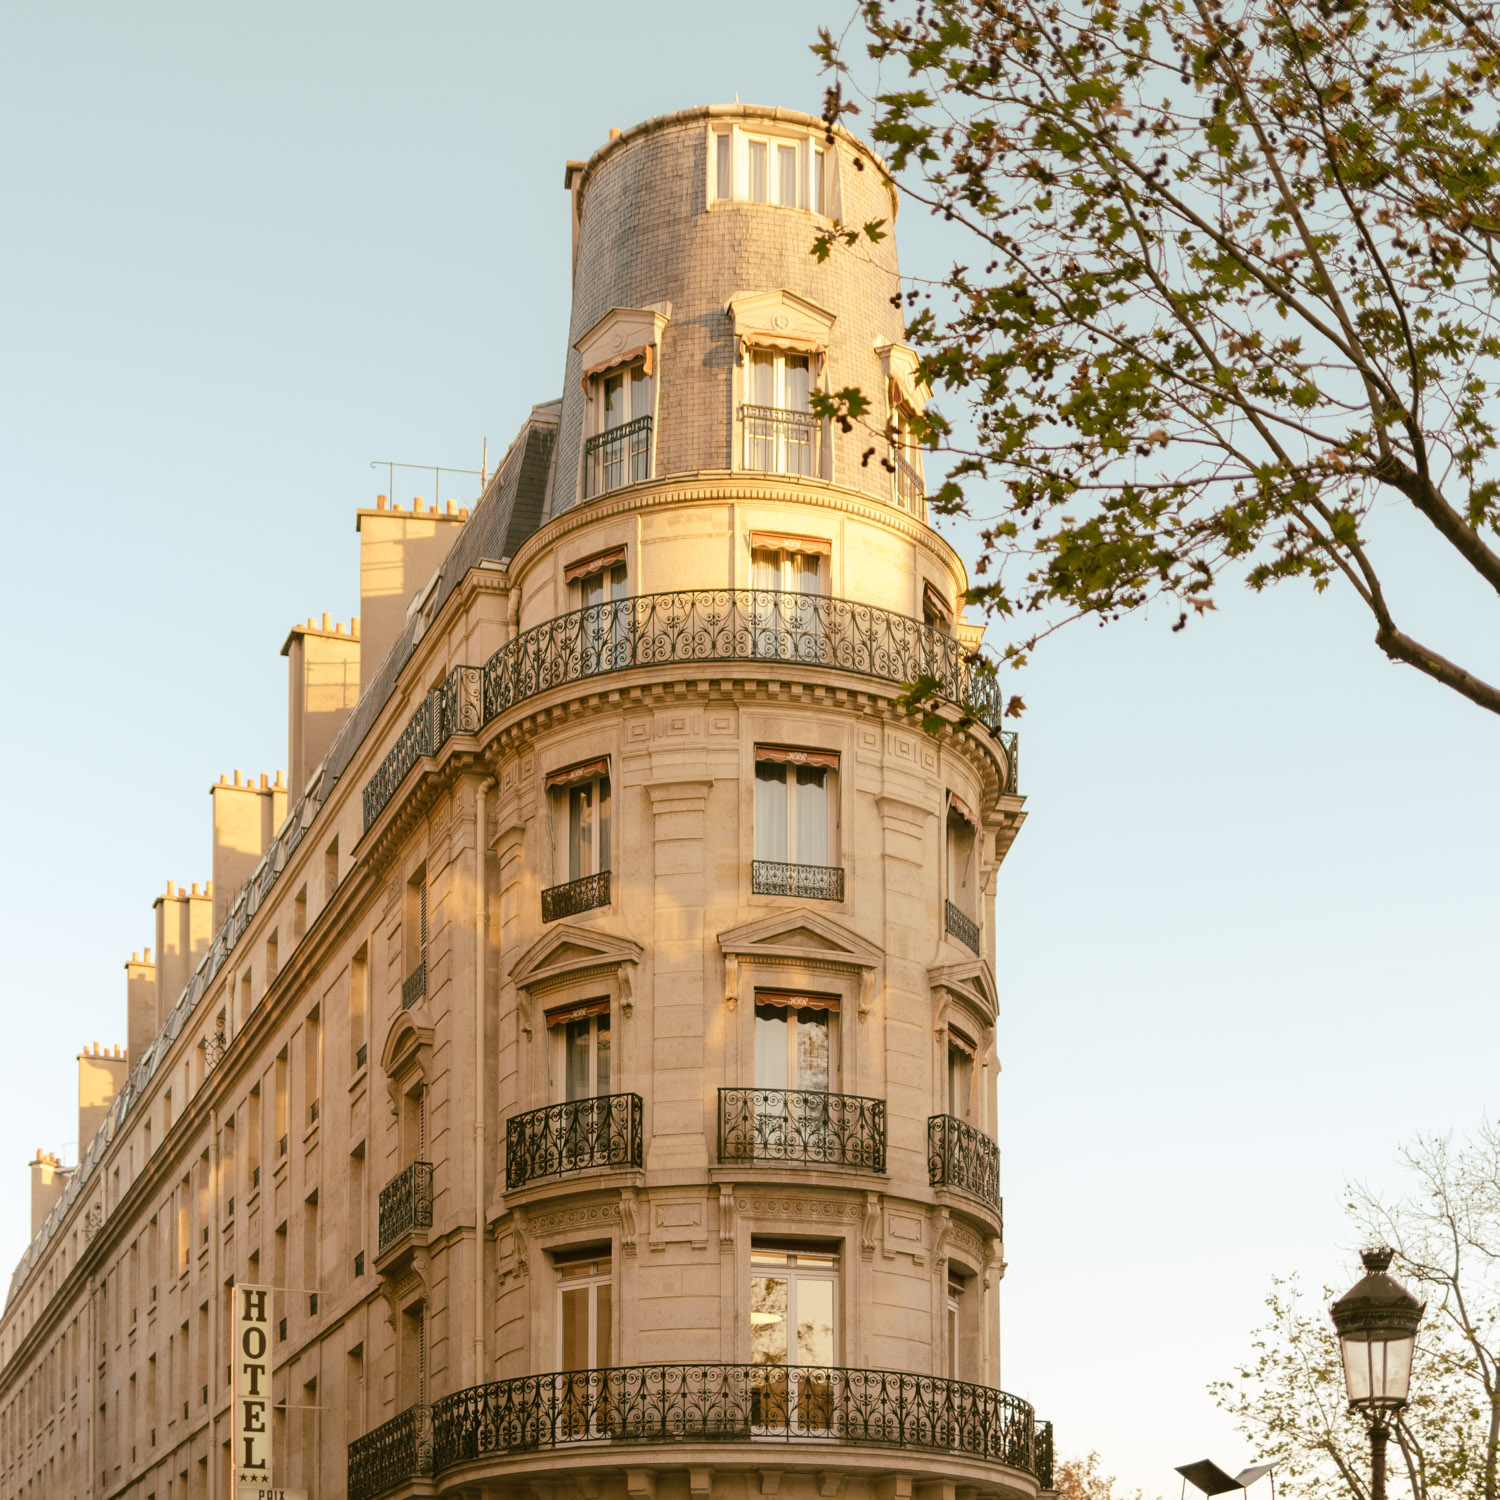 Renaissance Paris République - Immeuble du 10ème arrondissement - Toutes les photos sont sous Copyright © 2017 Jeff Frenette Photography / dezjeff. Pour utilisation des photos, me contacter au dezjeff@me.com